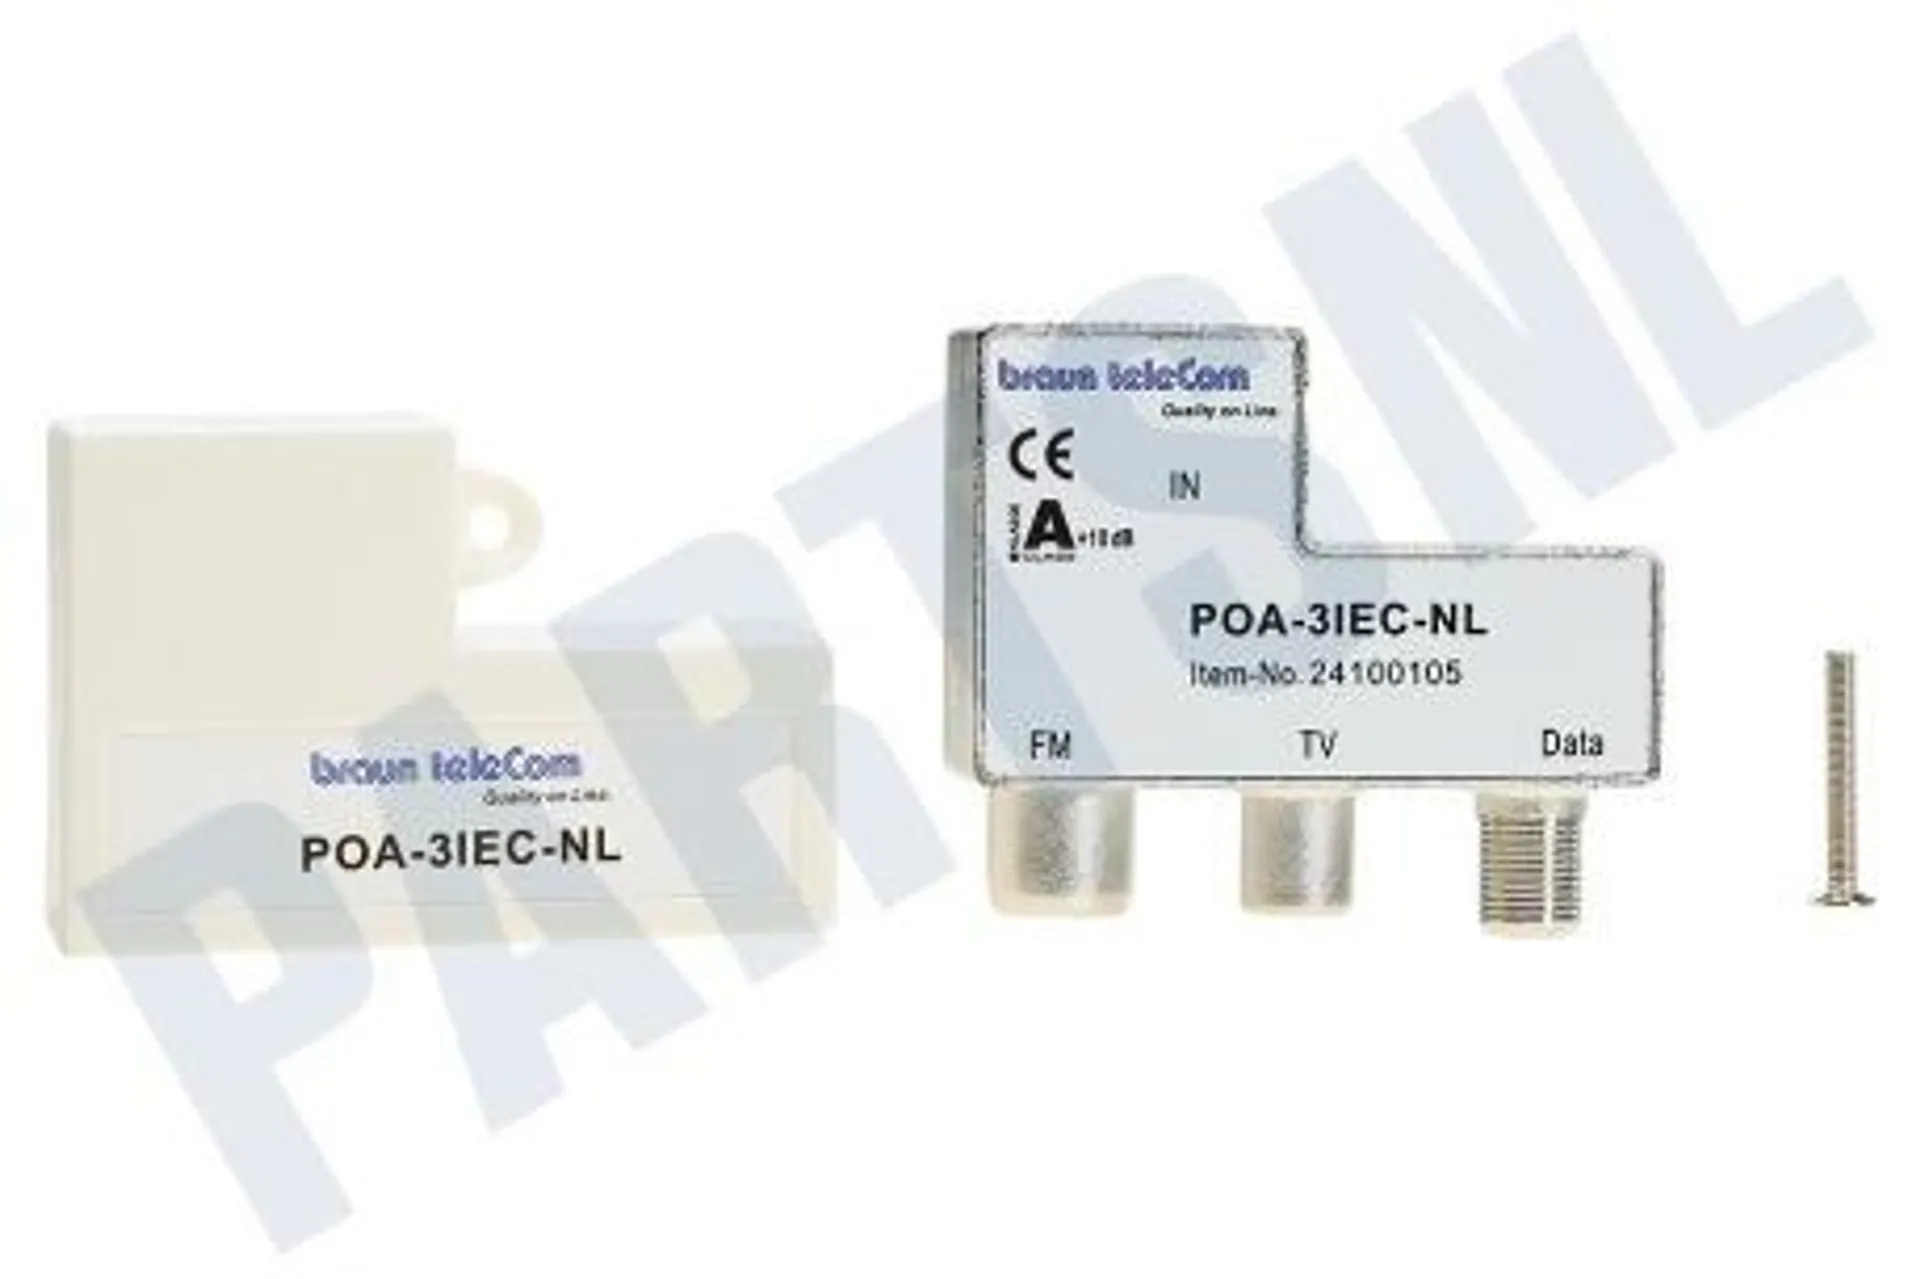 POA 3 IEC-NL Verdeel element Radio-TV-modem verdeler